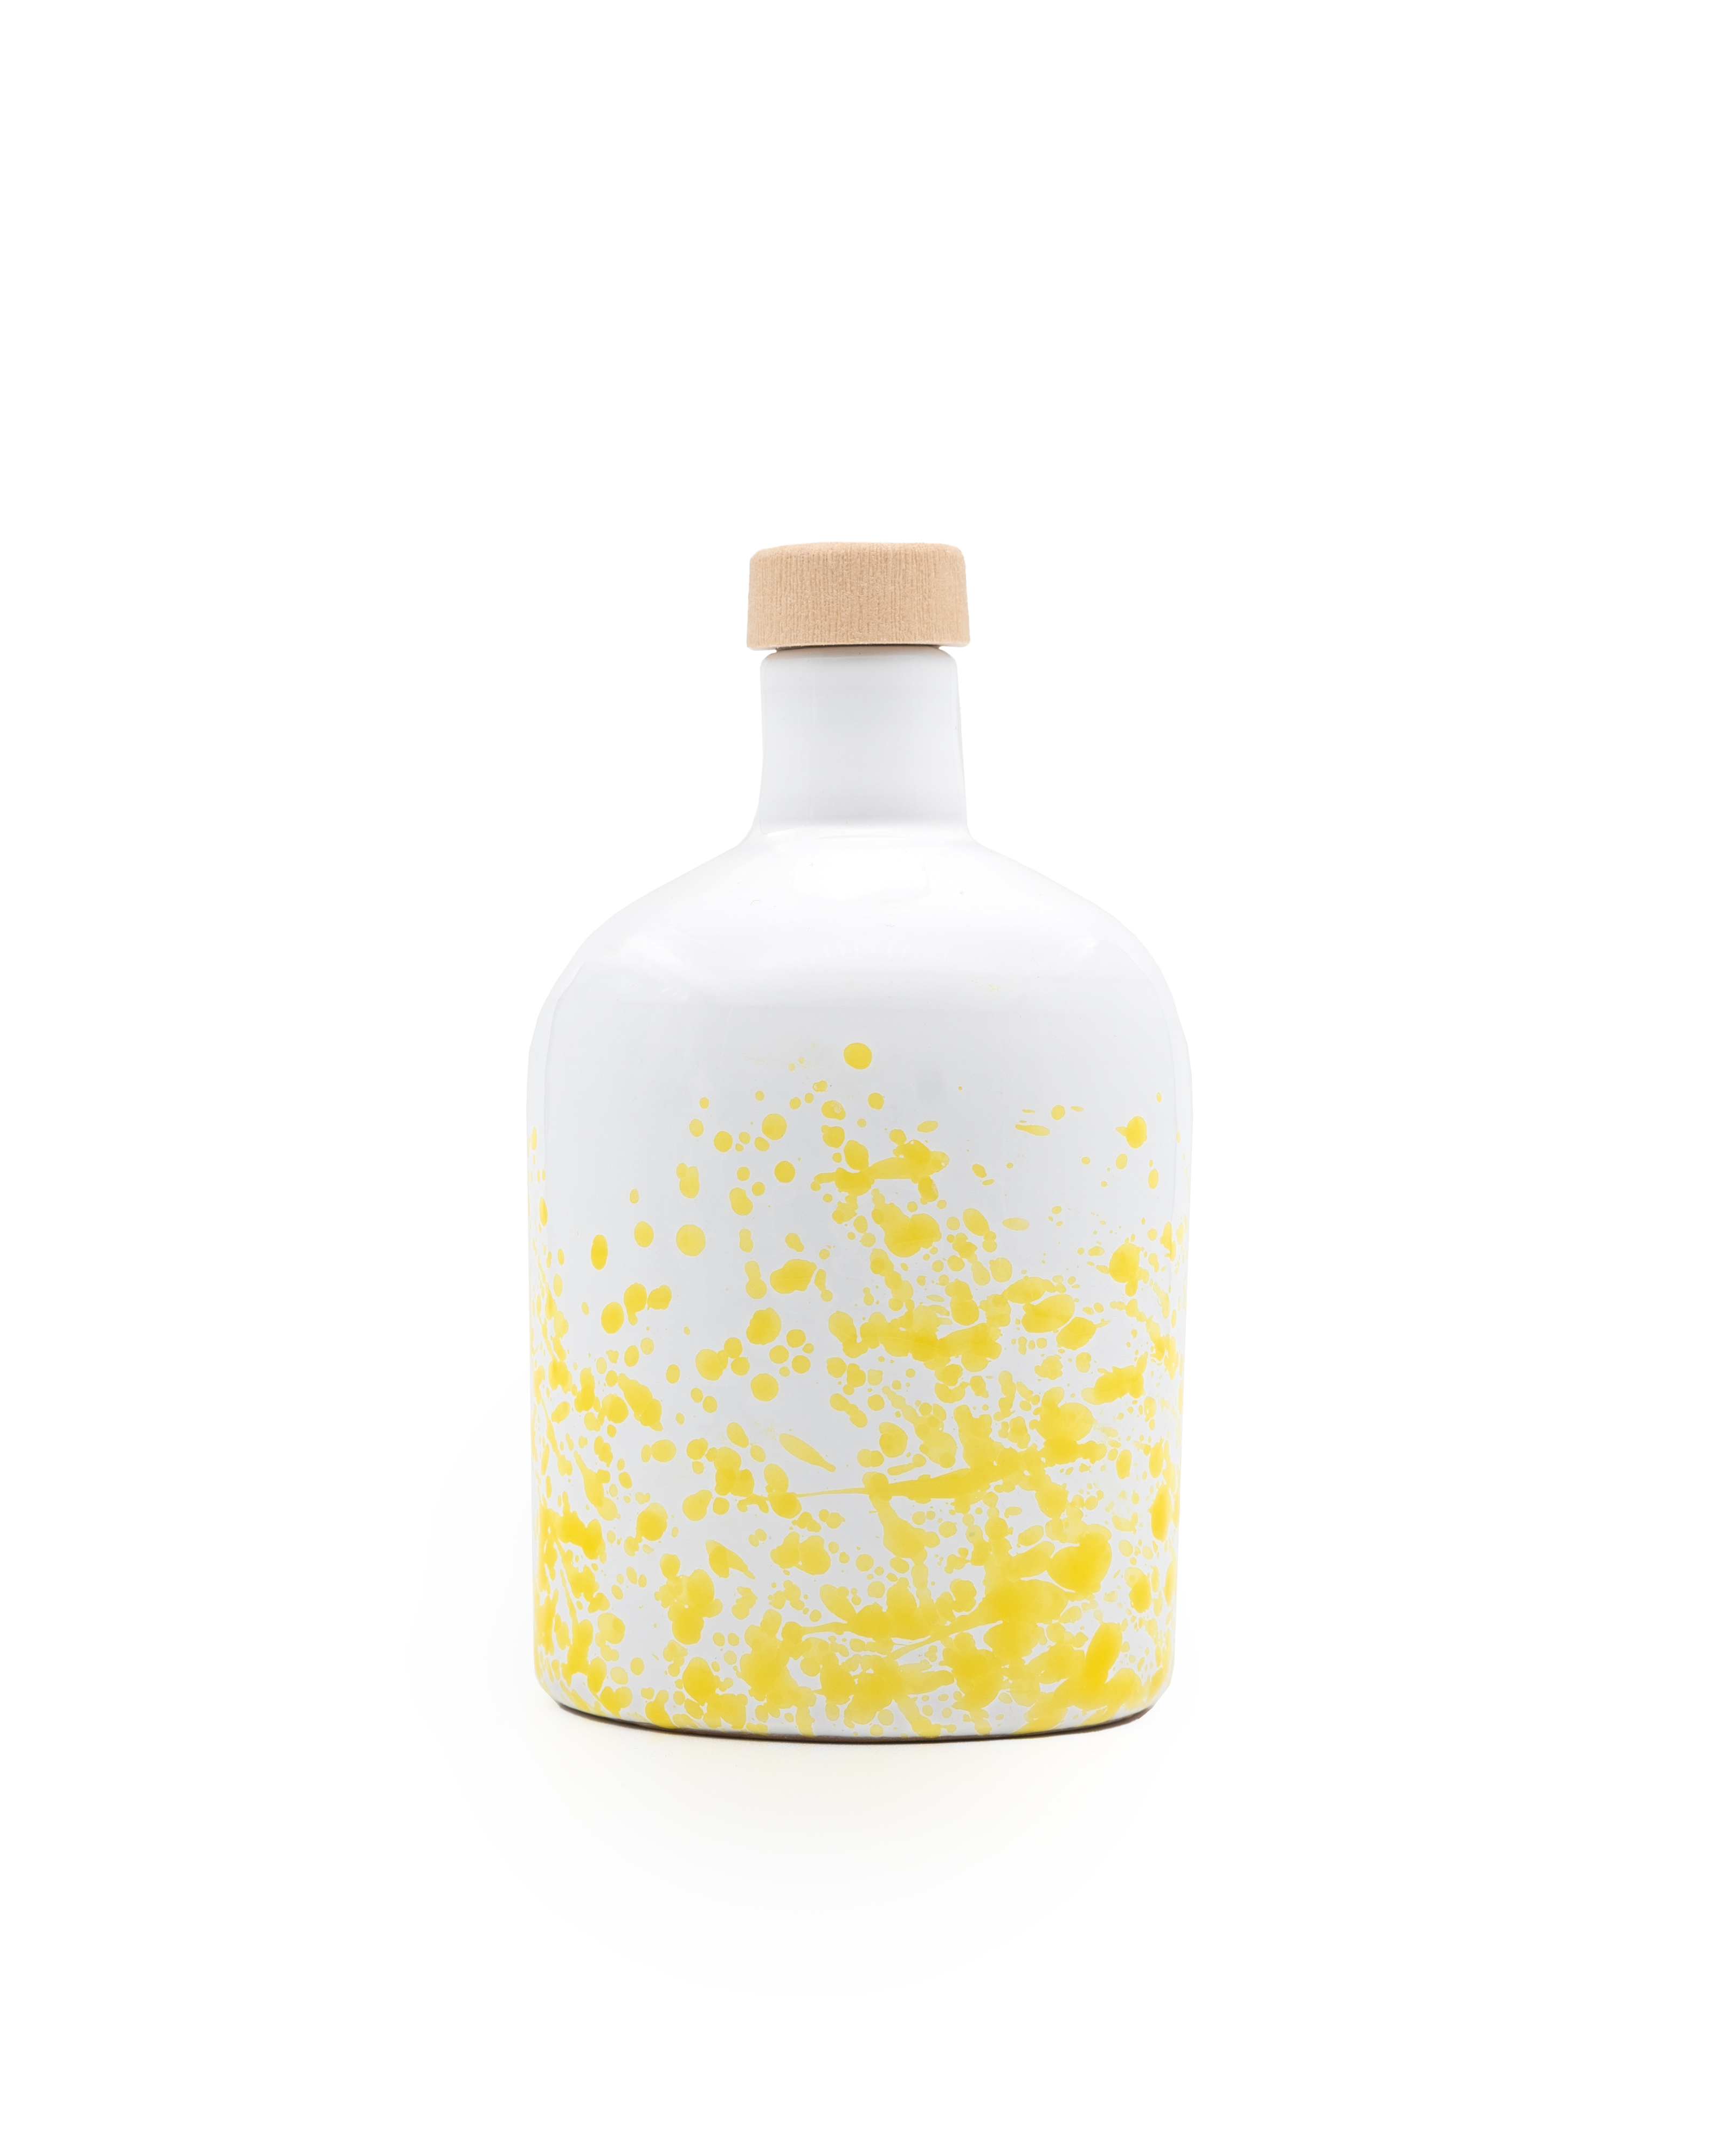 ANDANTE natives Bio-Olivenöl Extra, gefiltert, 250ml Keramikflasche gelb